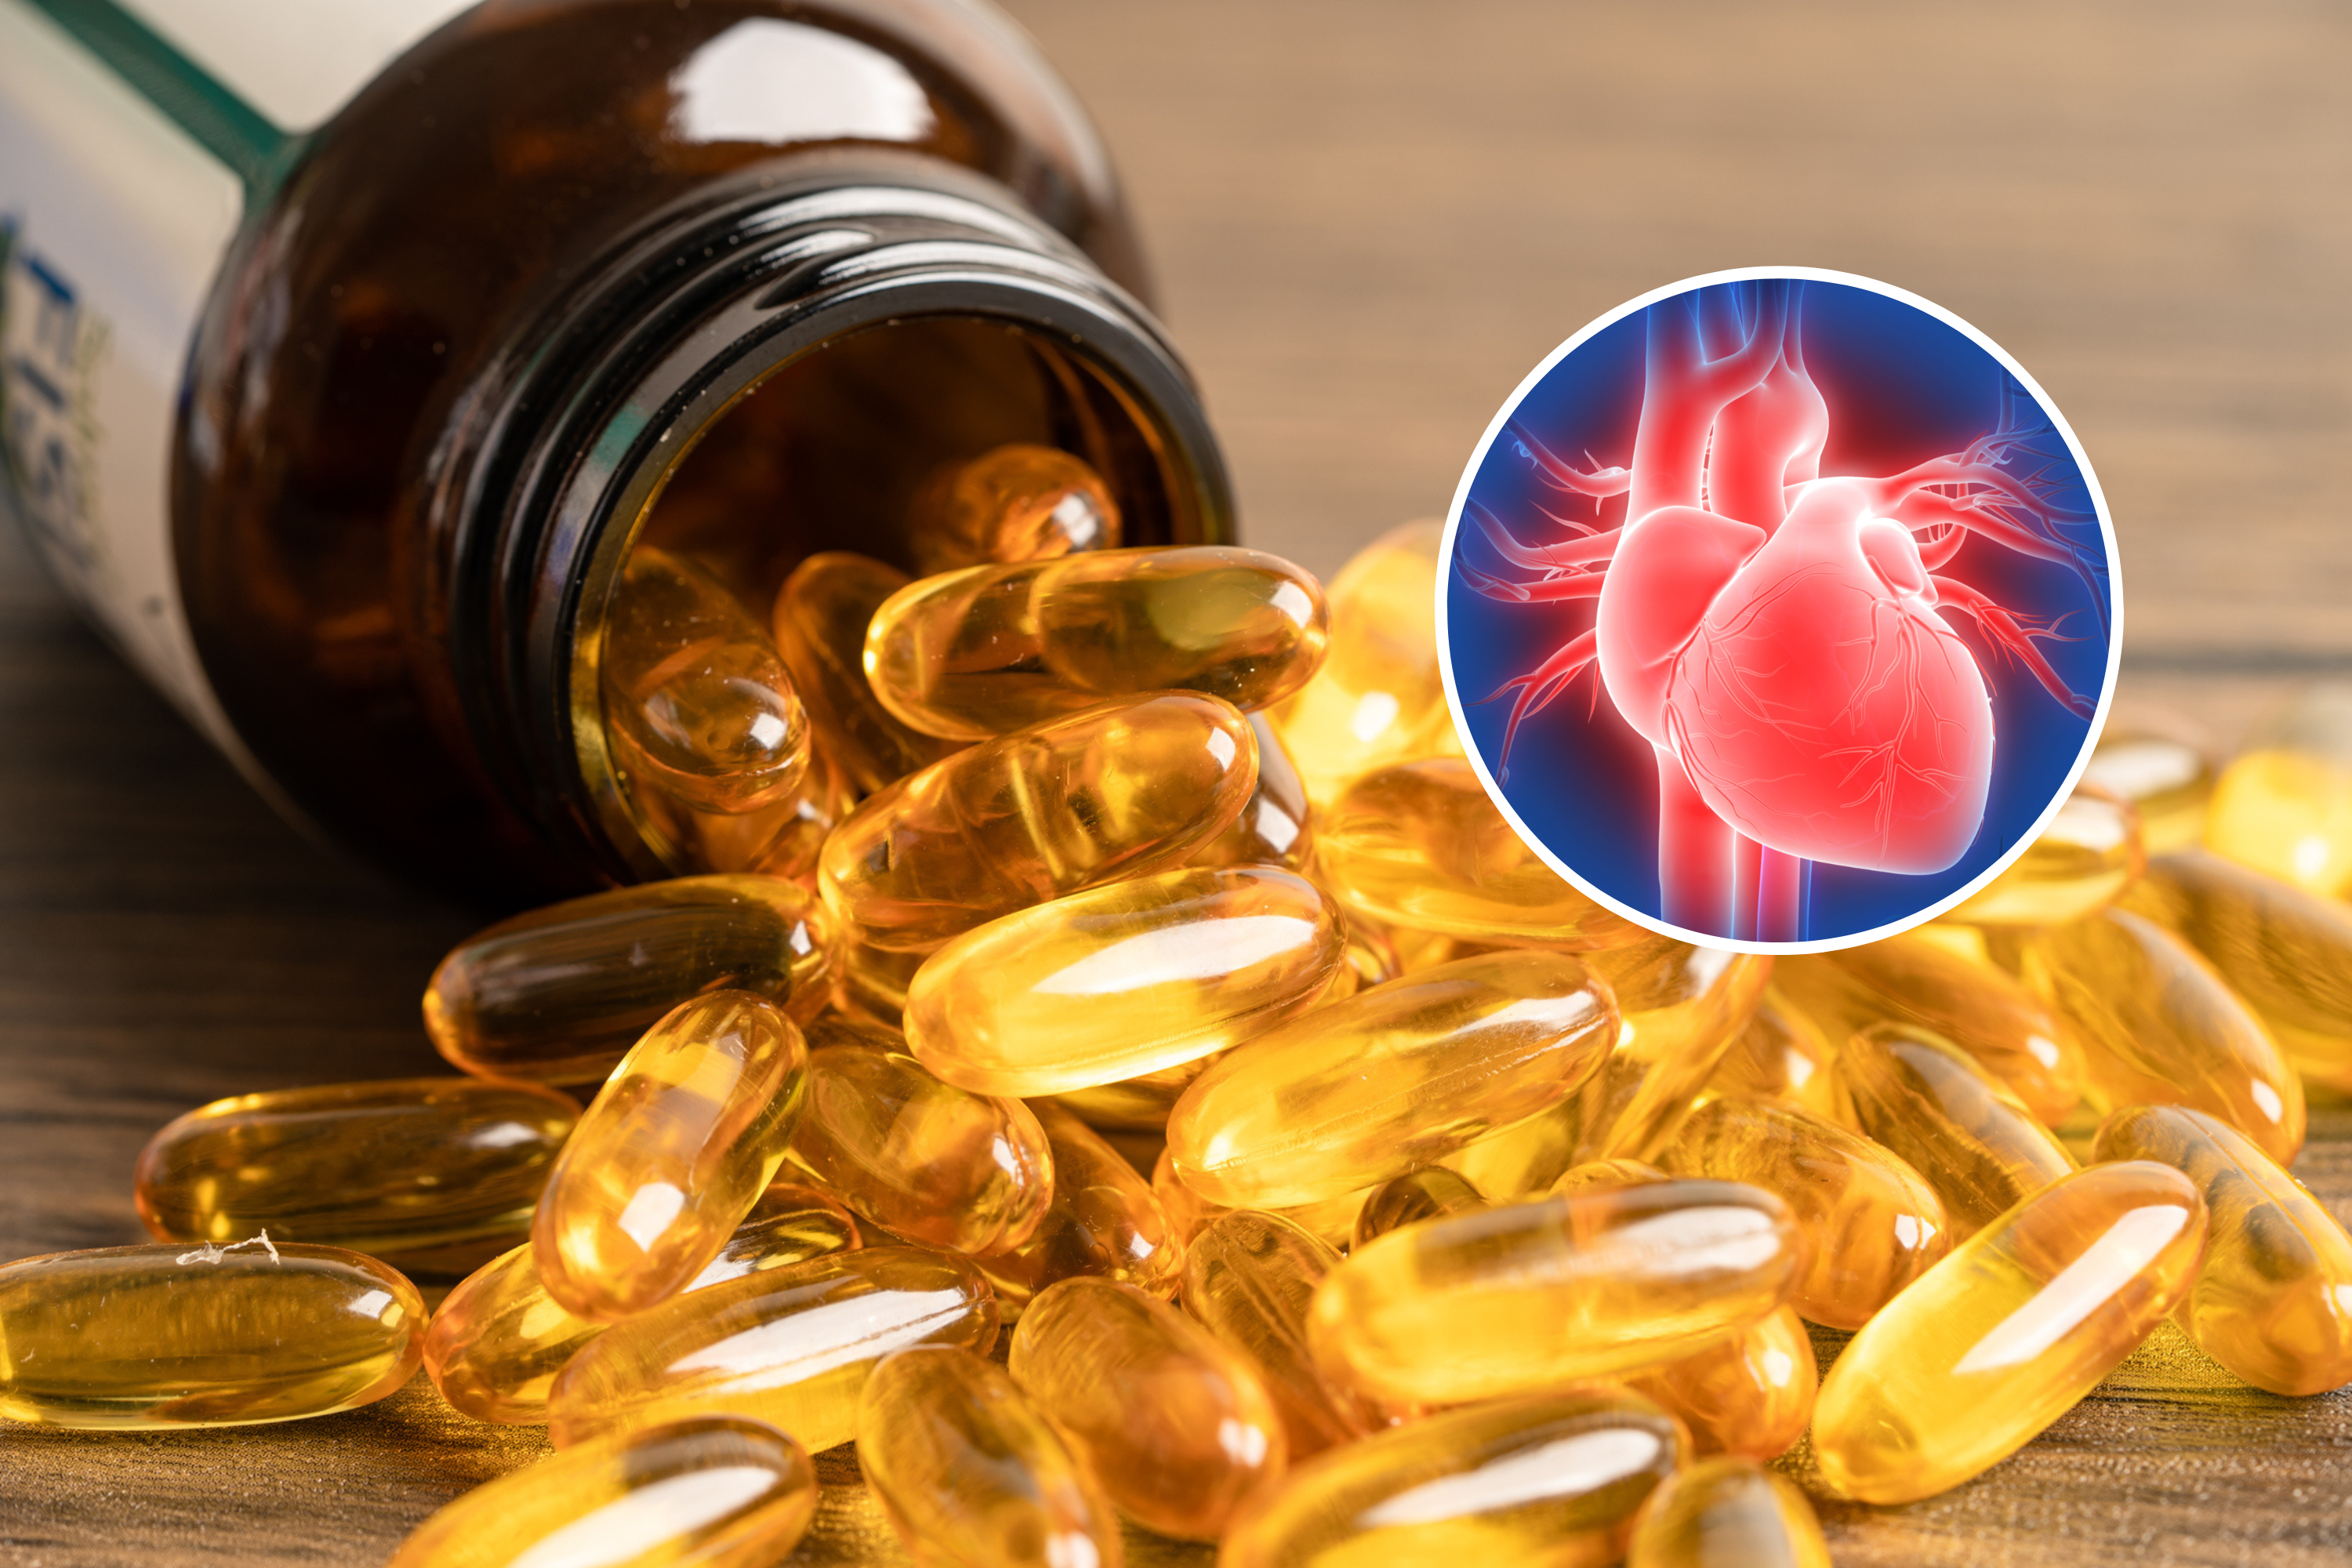 Les suppléments d’huile de poisson peuvent augmenter le risque d’accident vasculaire cérébral et de maladie cardiaque pour certains